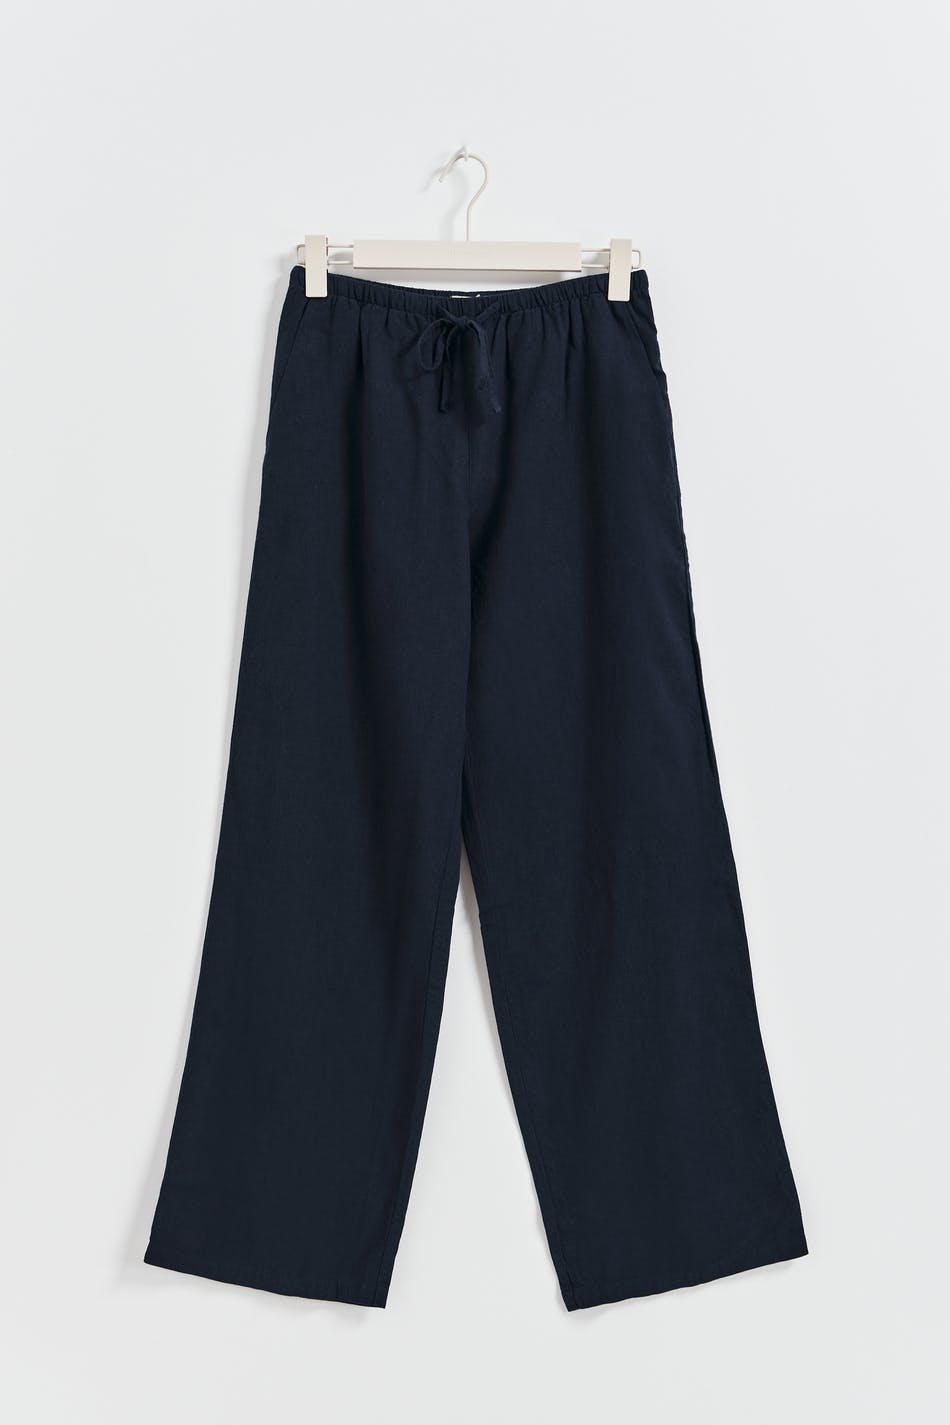 Gina Tricot - Tall linen blend trousers - hørbukser- Blue - S - Female